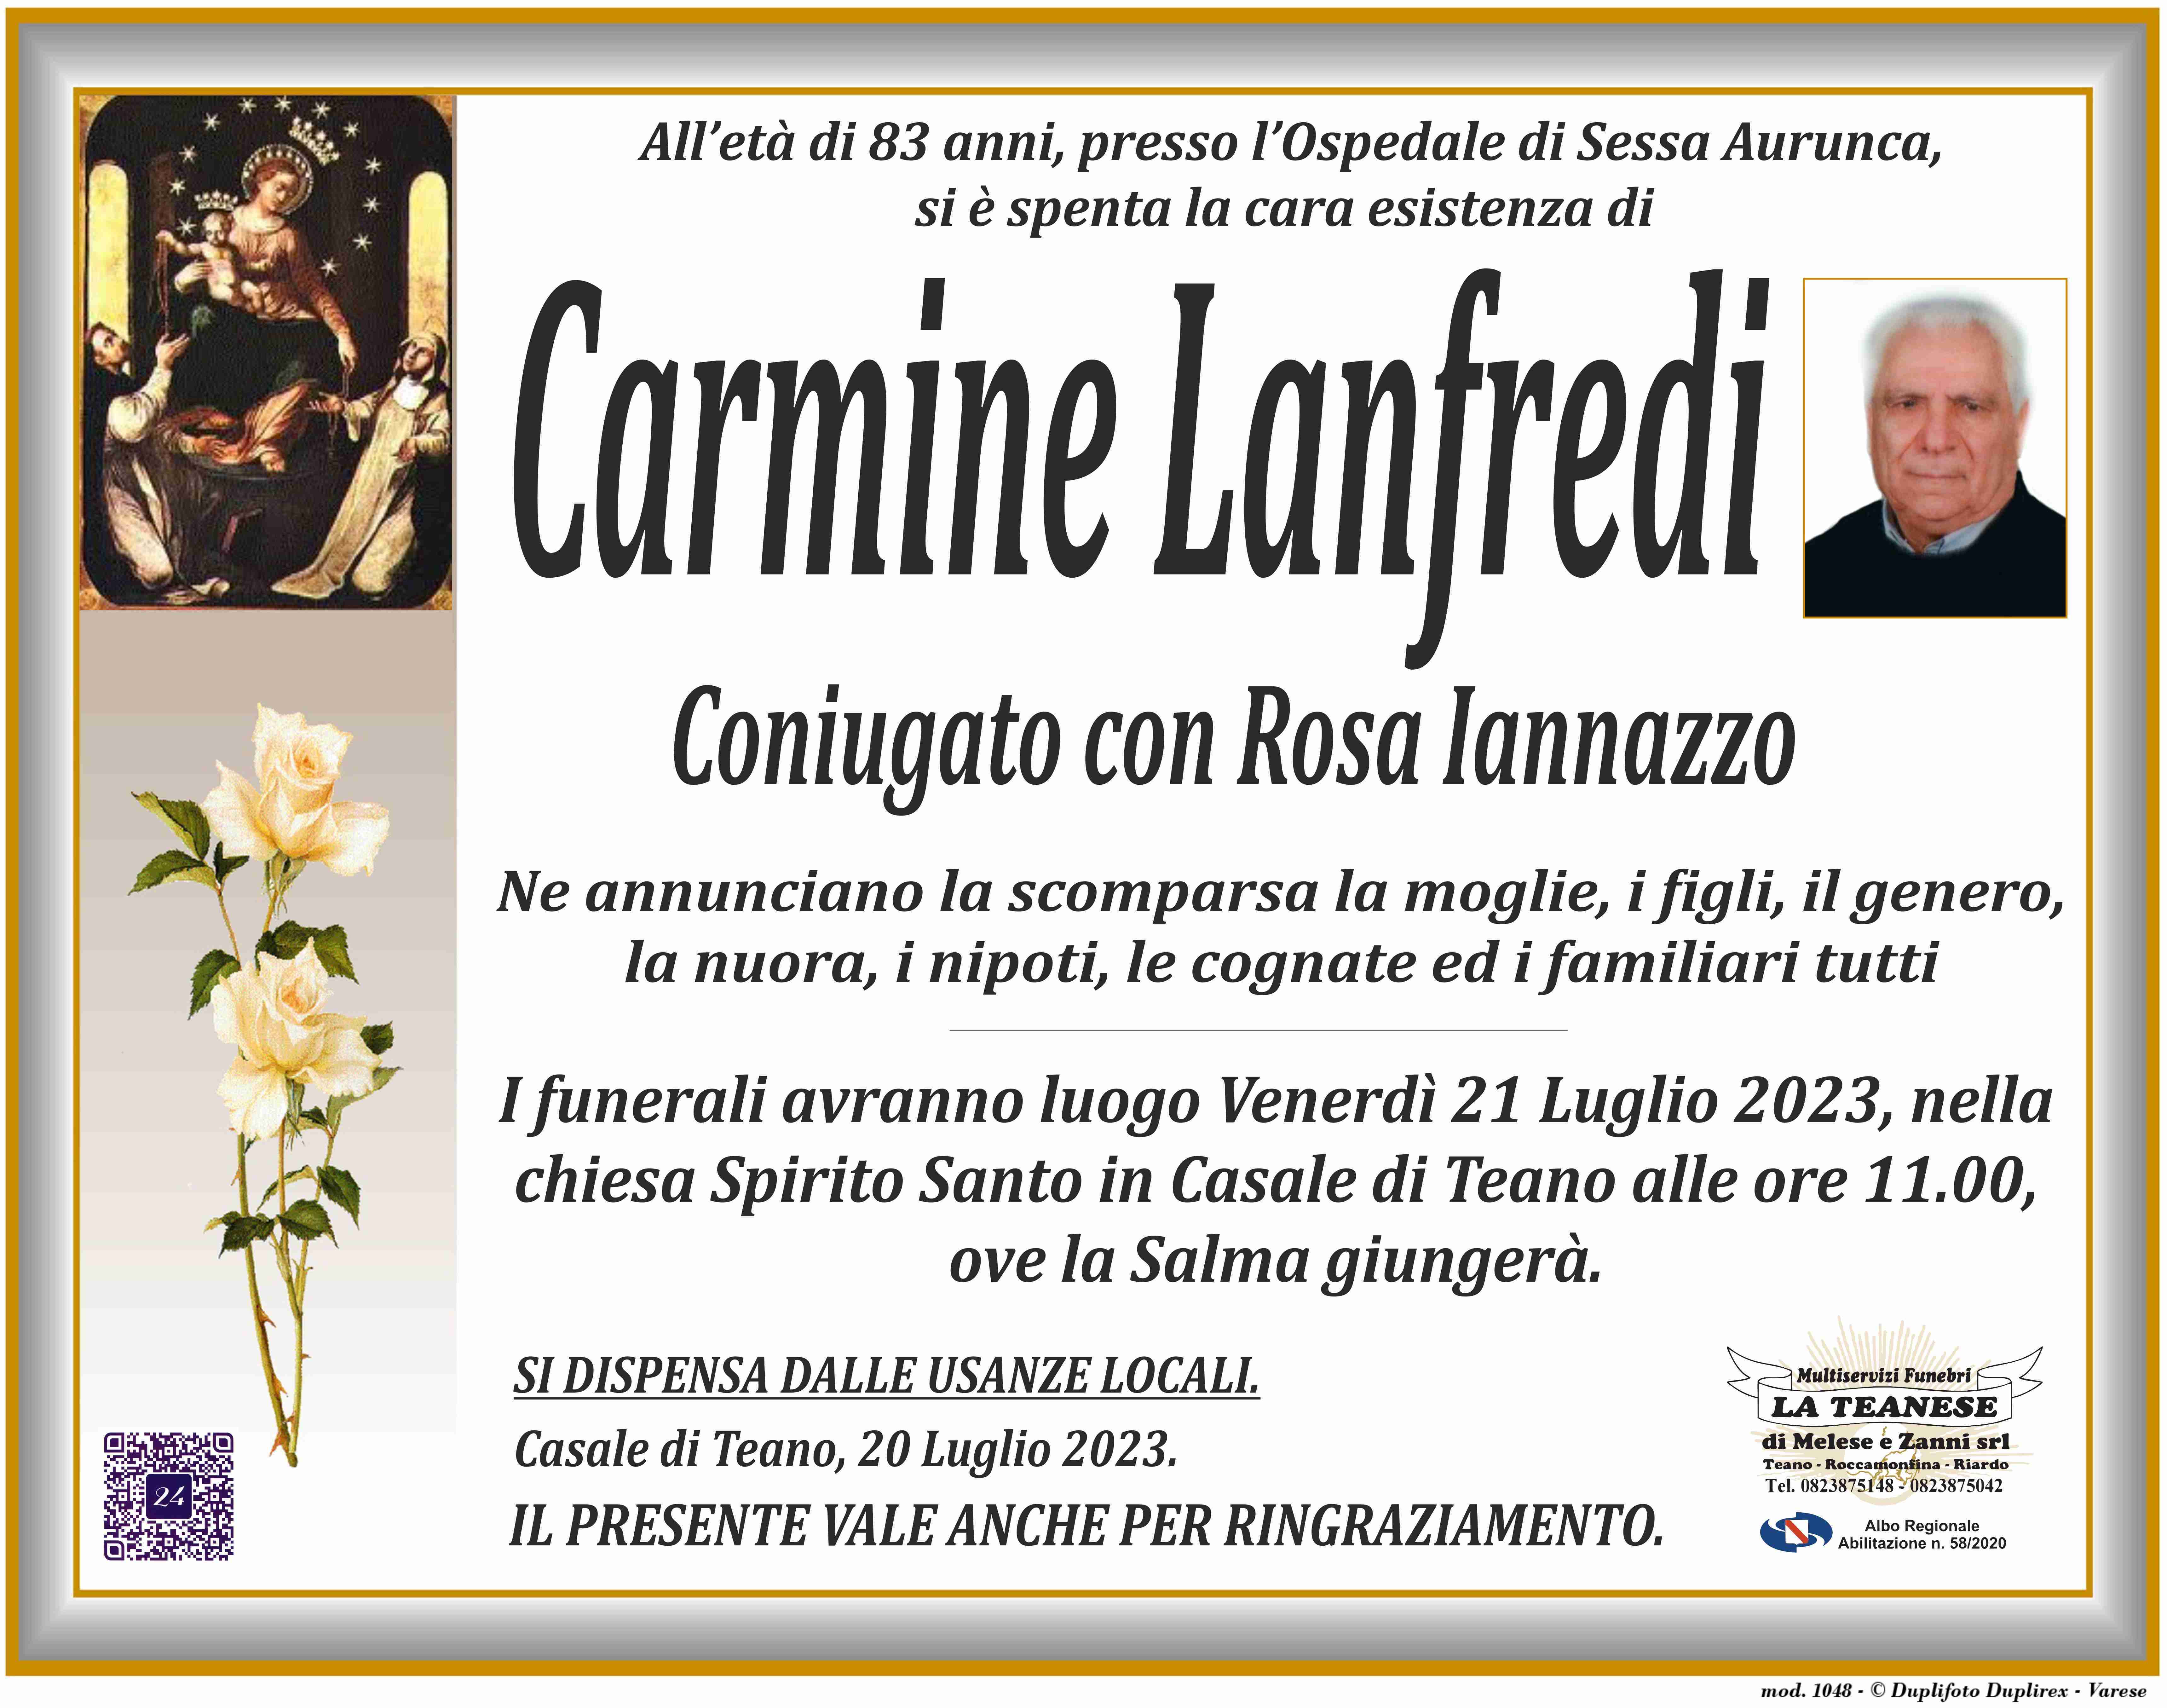 Carmine Lanfredi